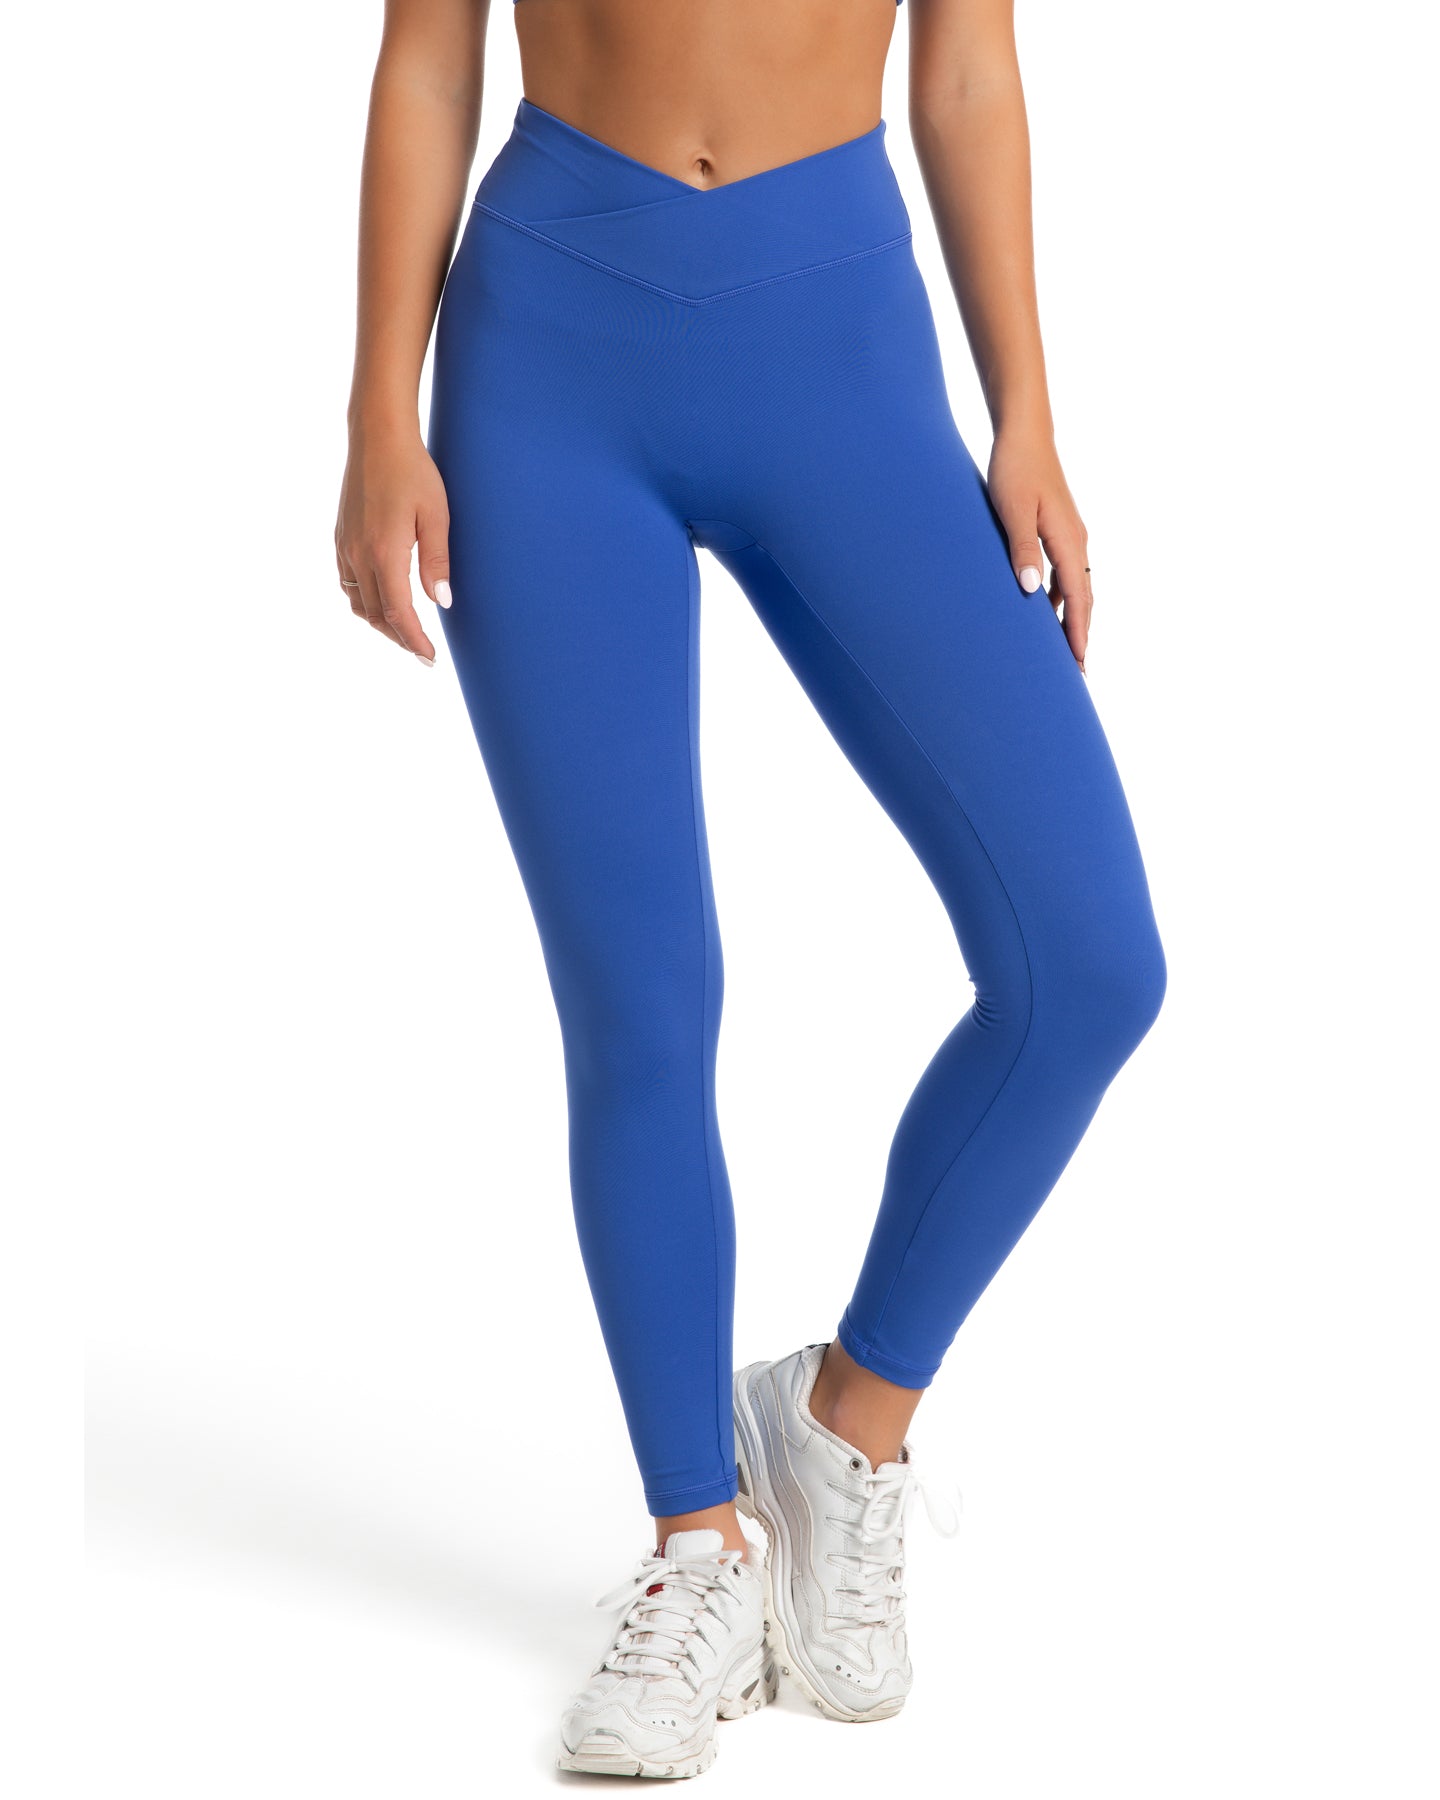 Electric Blue Workout Leggings – PeachFit Sportswear